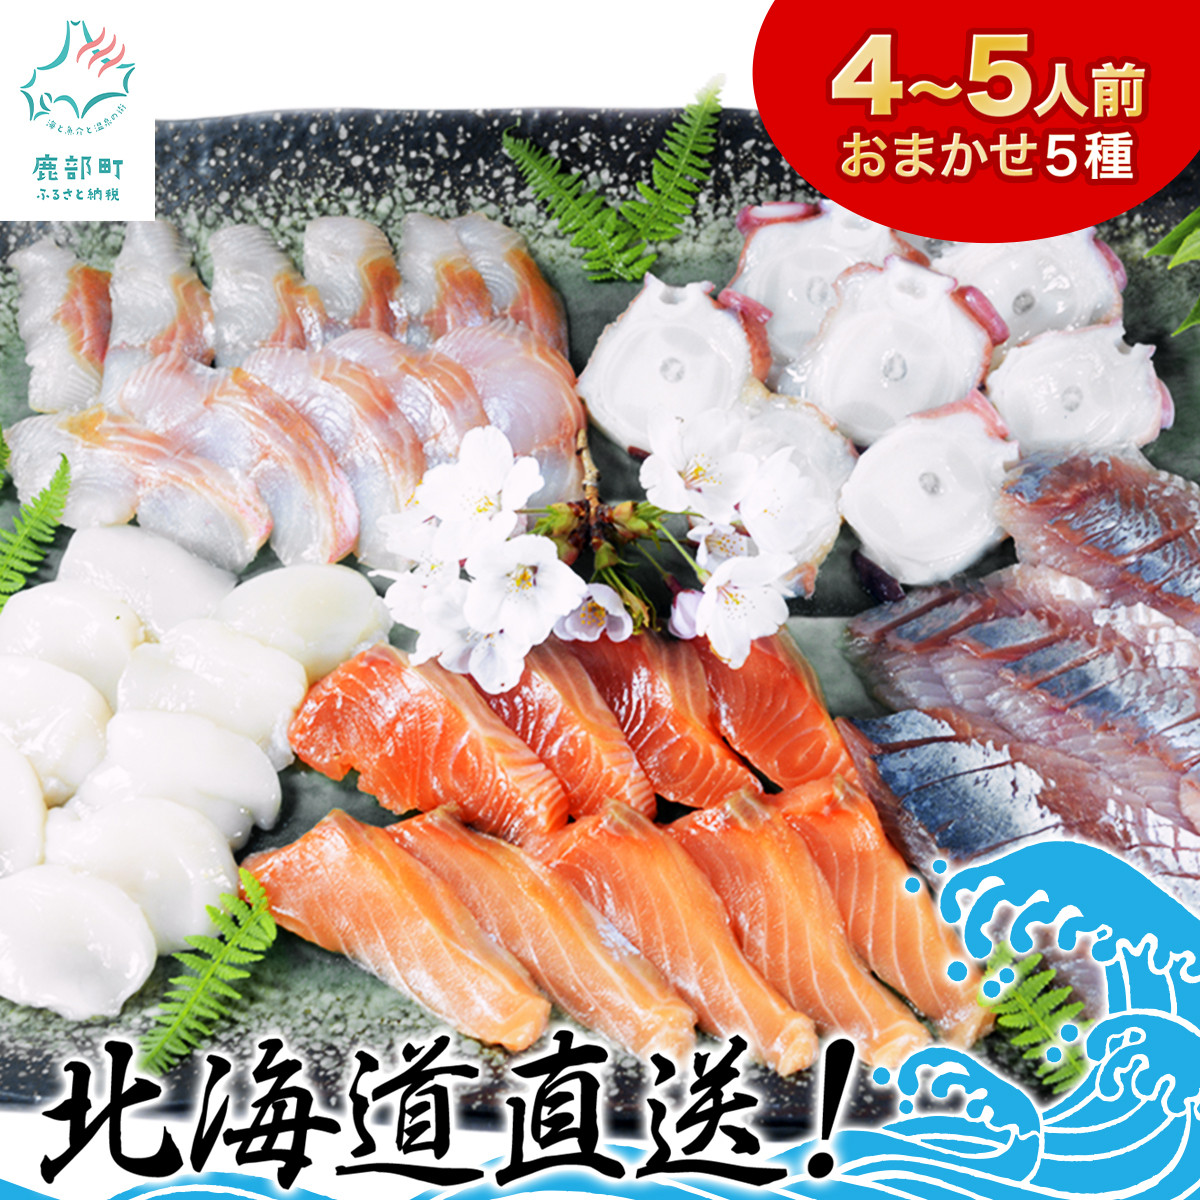 ふるさと納税 北海道 小樽市 漬魚 切身 詰合せ 6種類 計16個セット 約1.4kg [664]